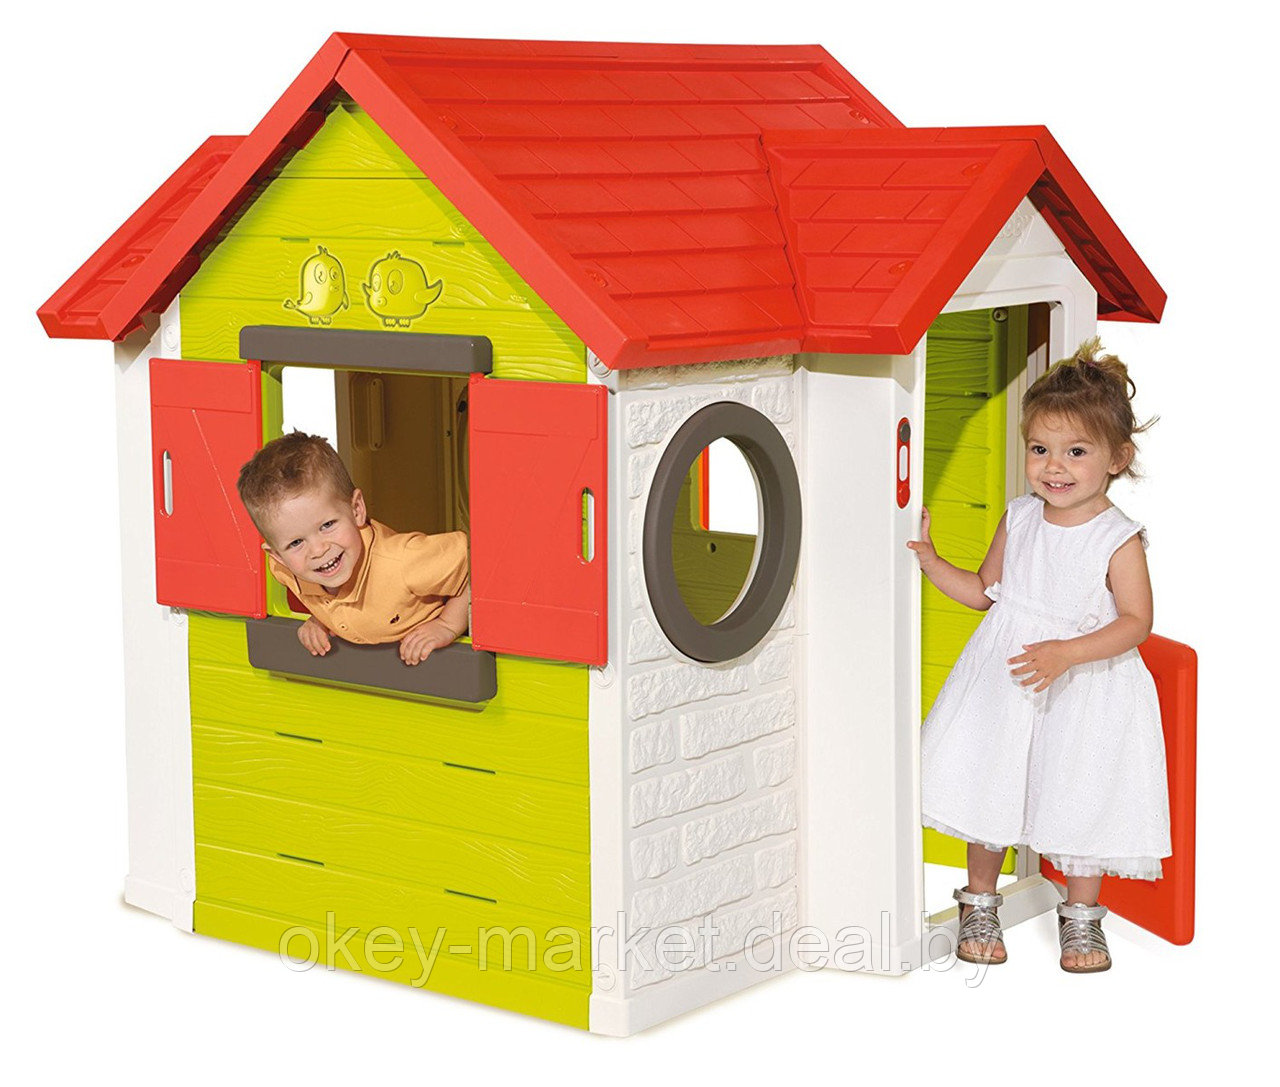 Детский игровой домик со звонком Smoby 810402